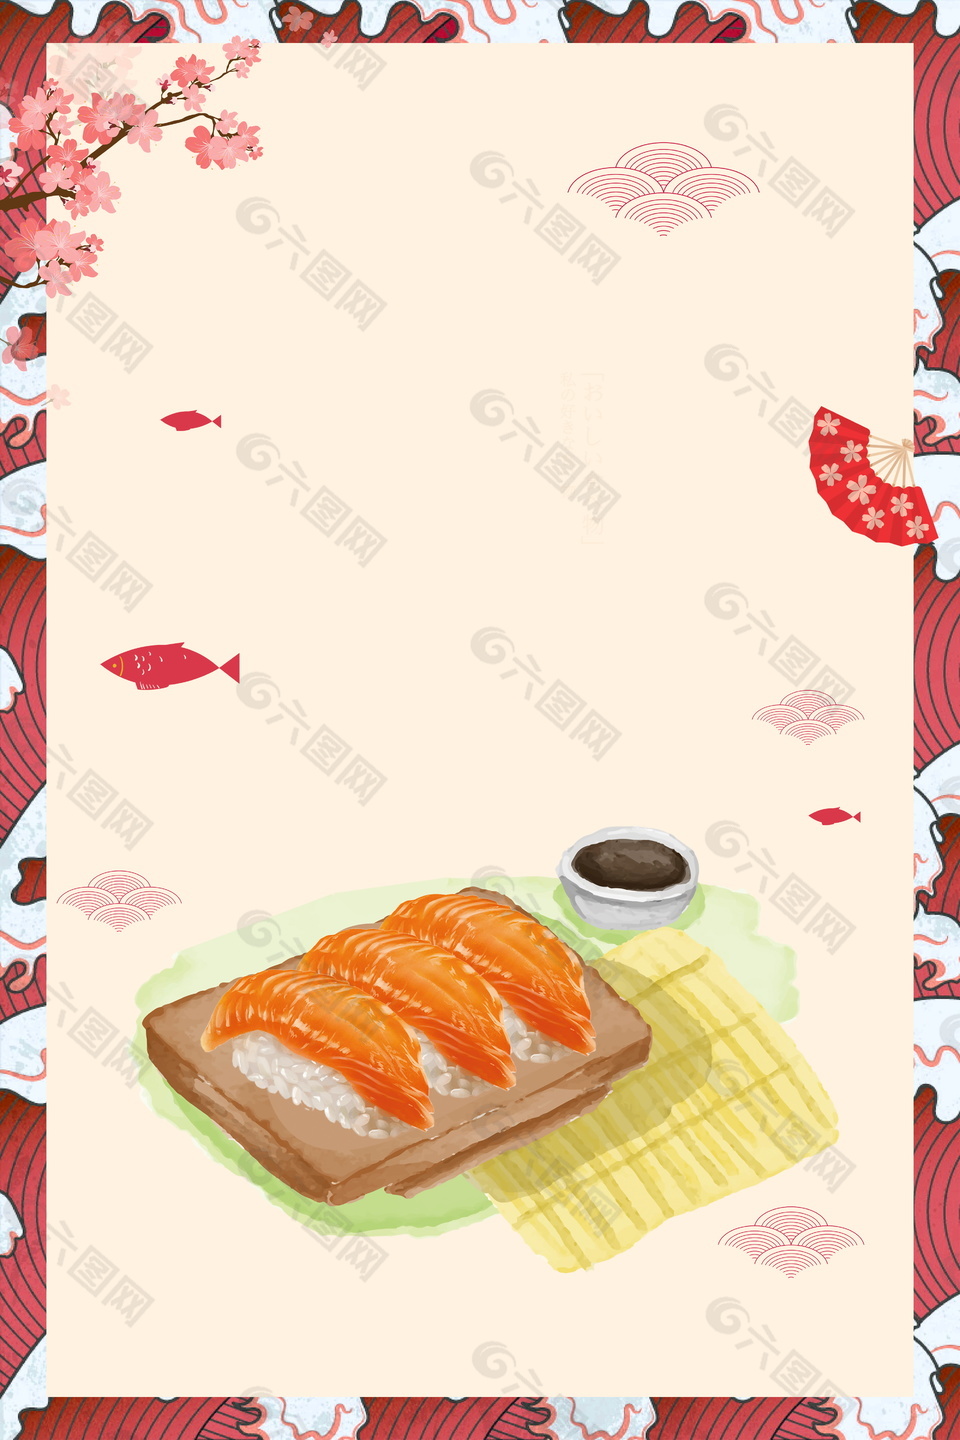 花枝日料边框日式拉面餐饮背景素材